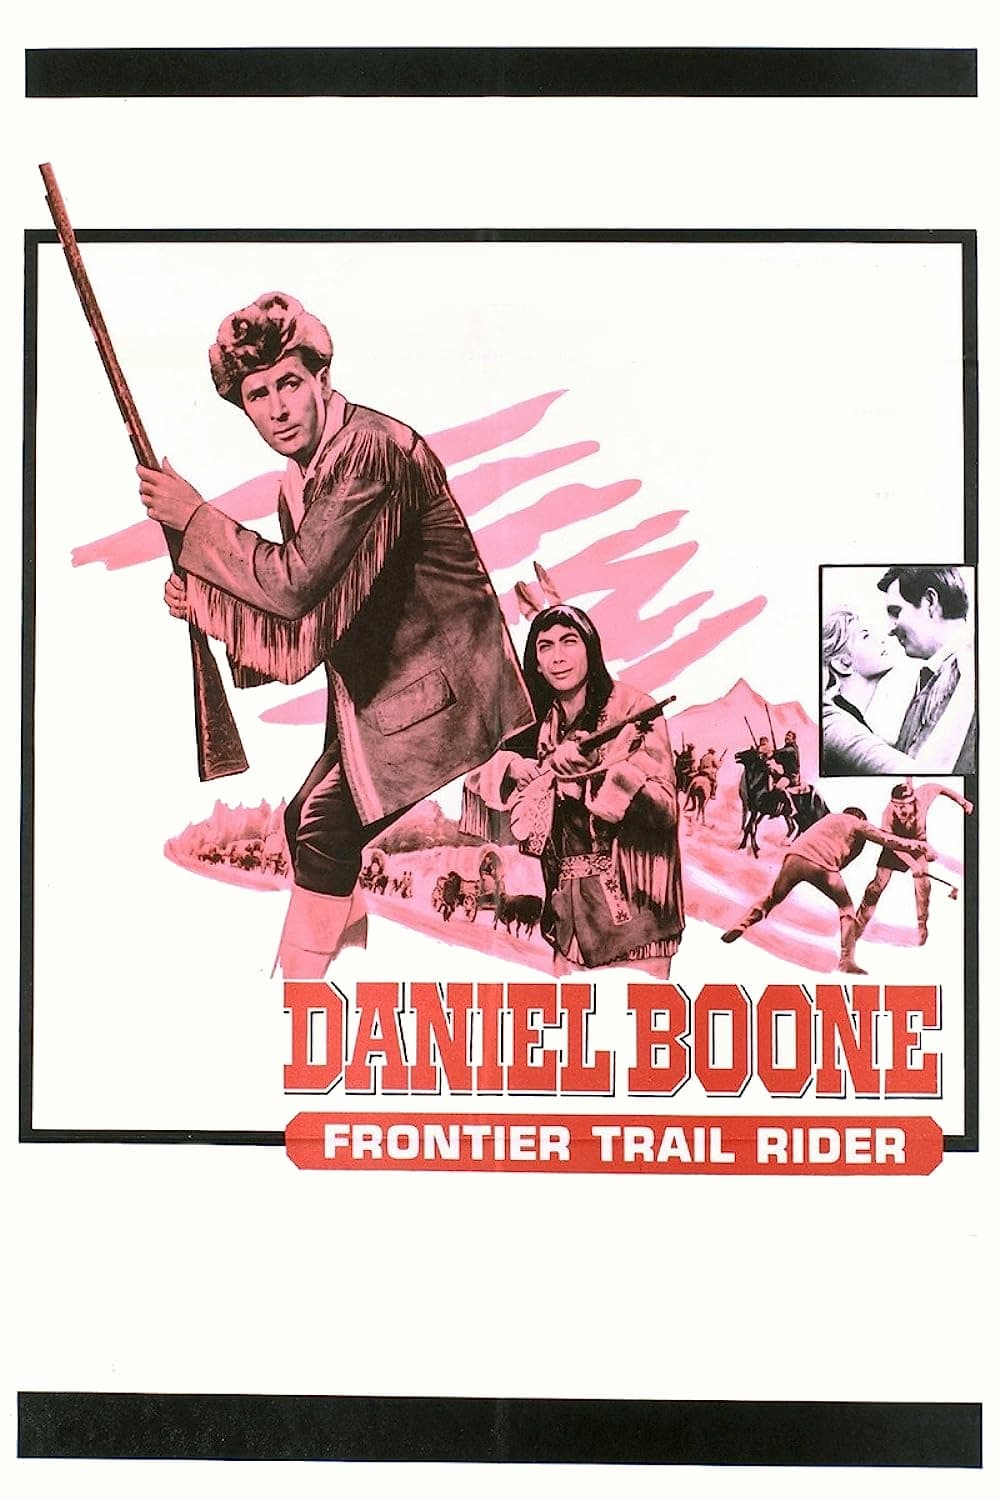 Daniel Boone Frontier trail rider (1966)